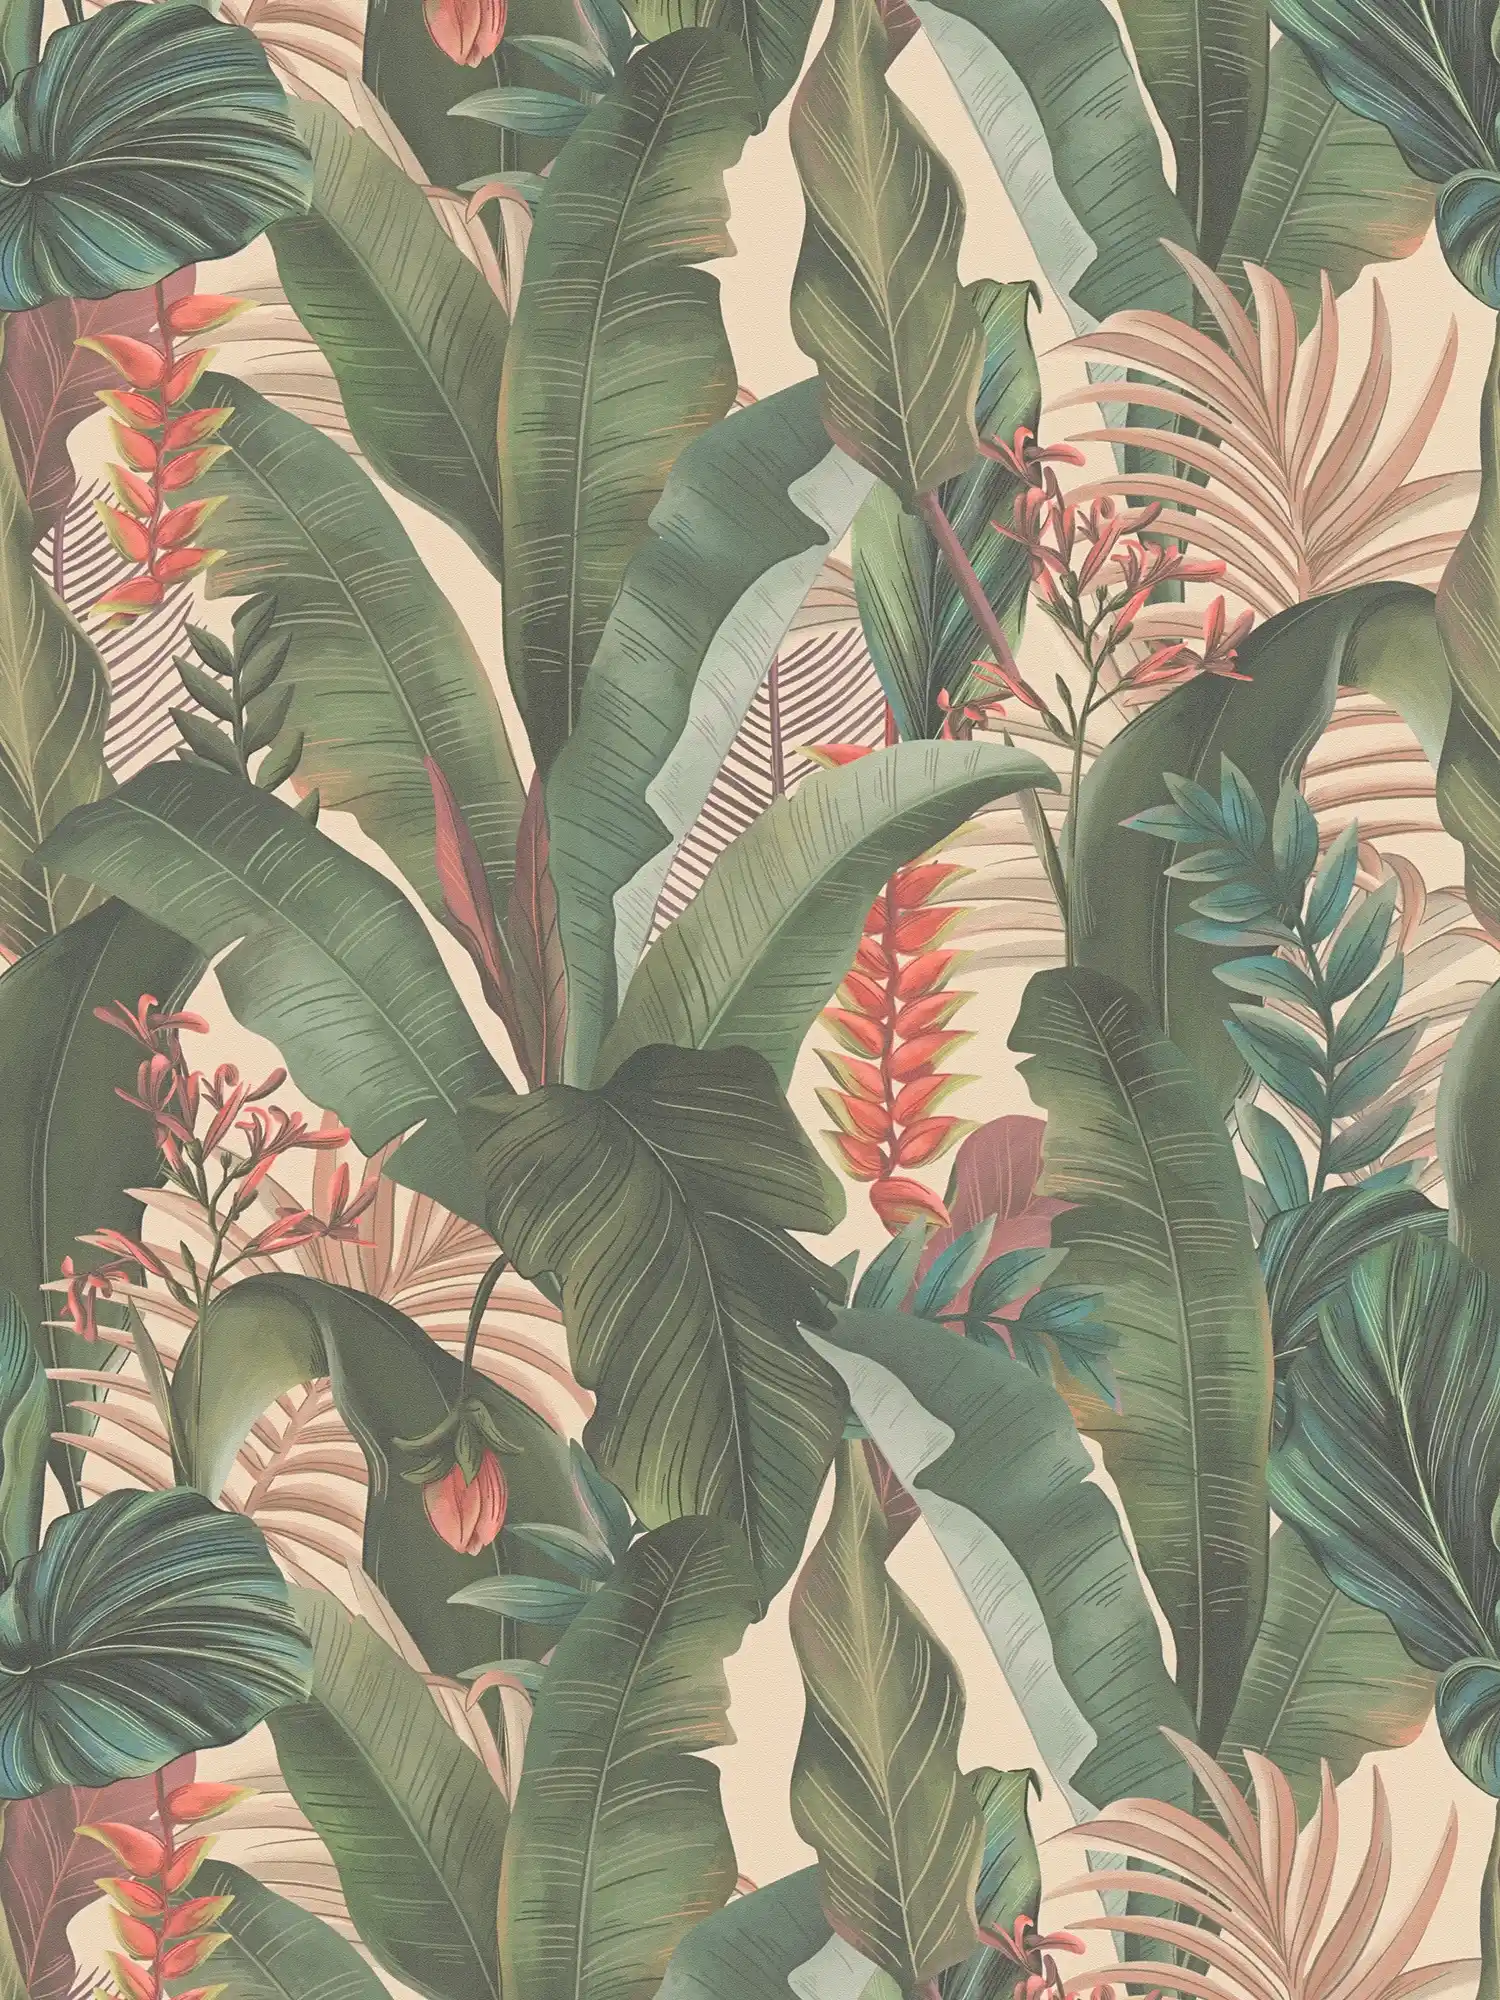         Papel pintado Selva con hojas de palmera y flores en estilo floral texturizado mate - Beige, Verde, Rosa
    